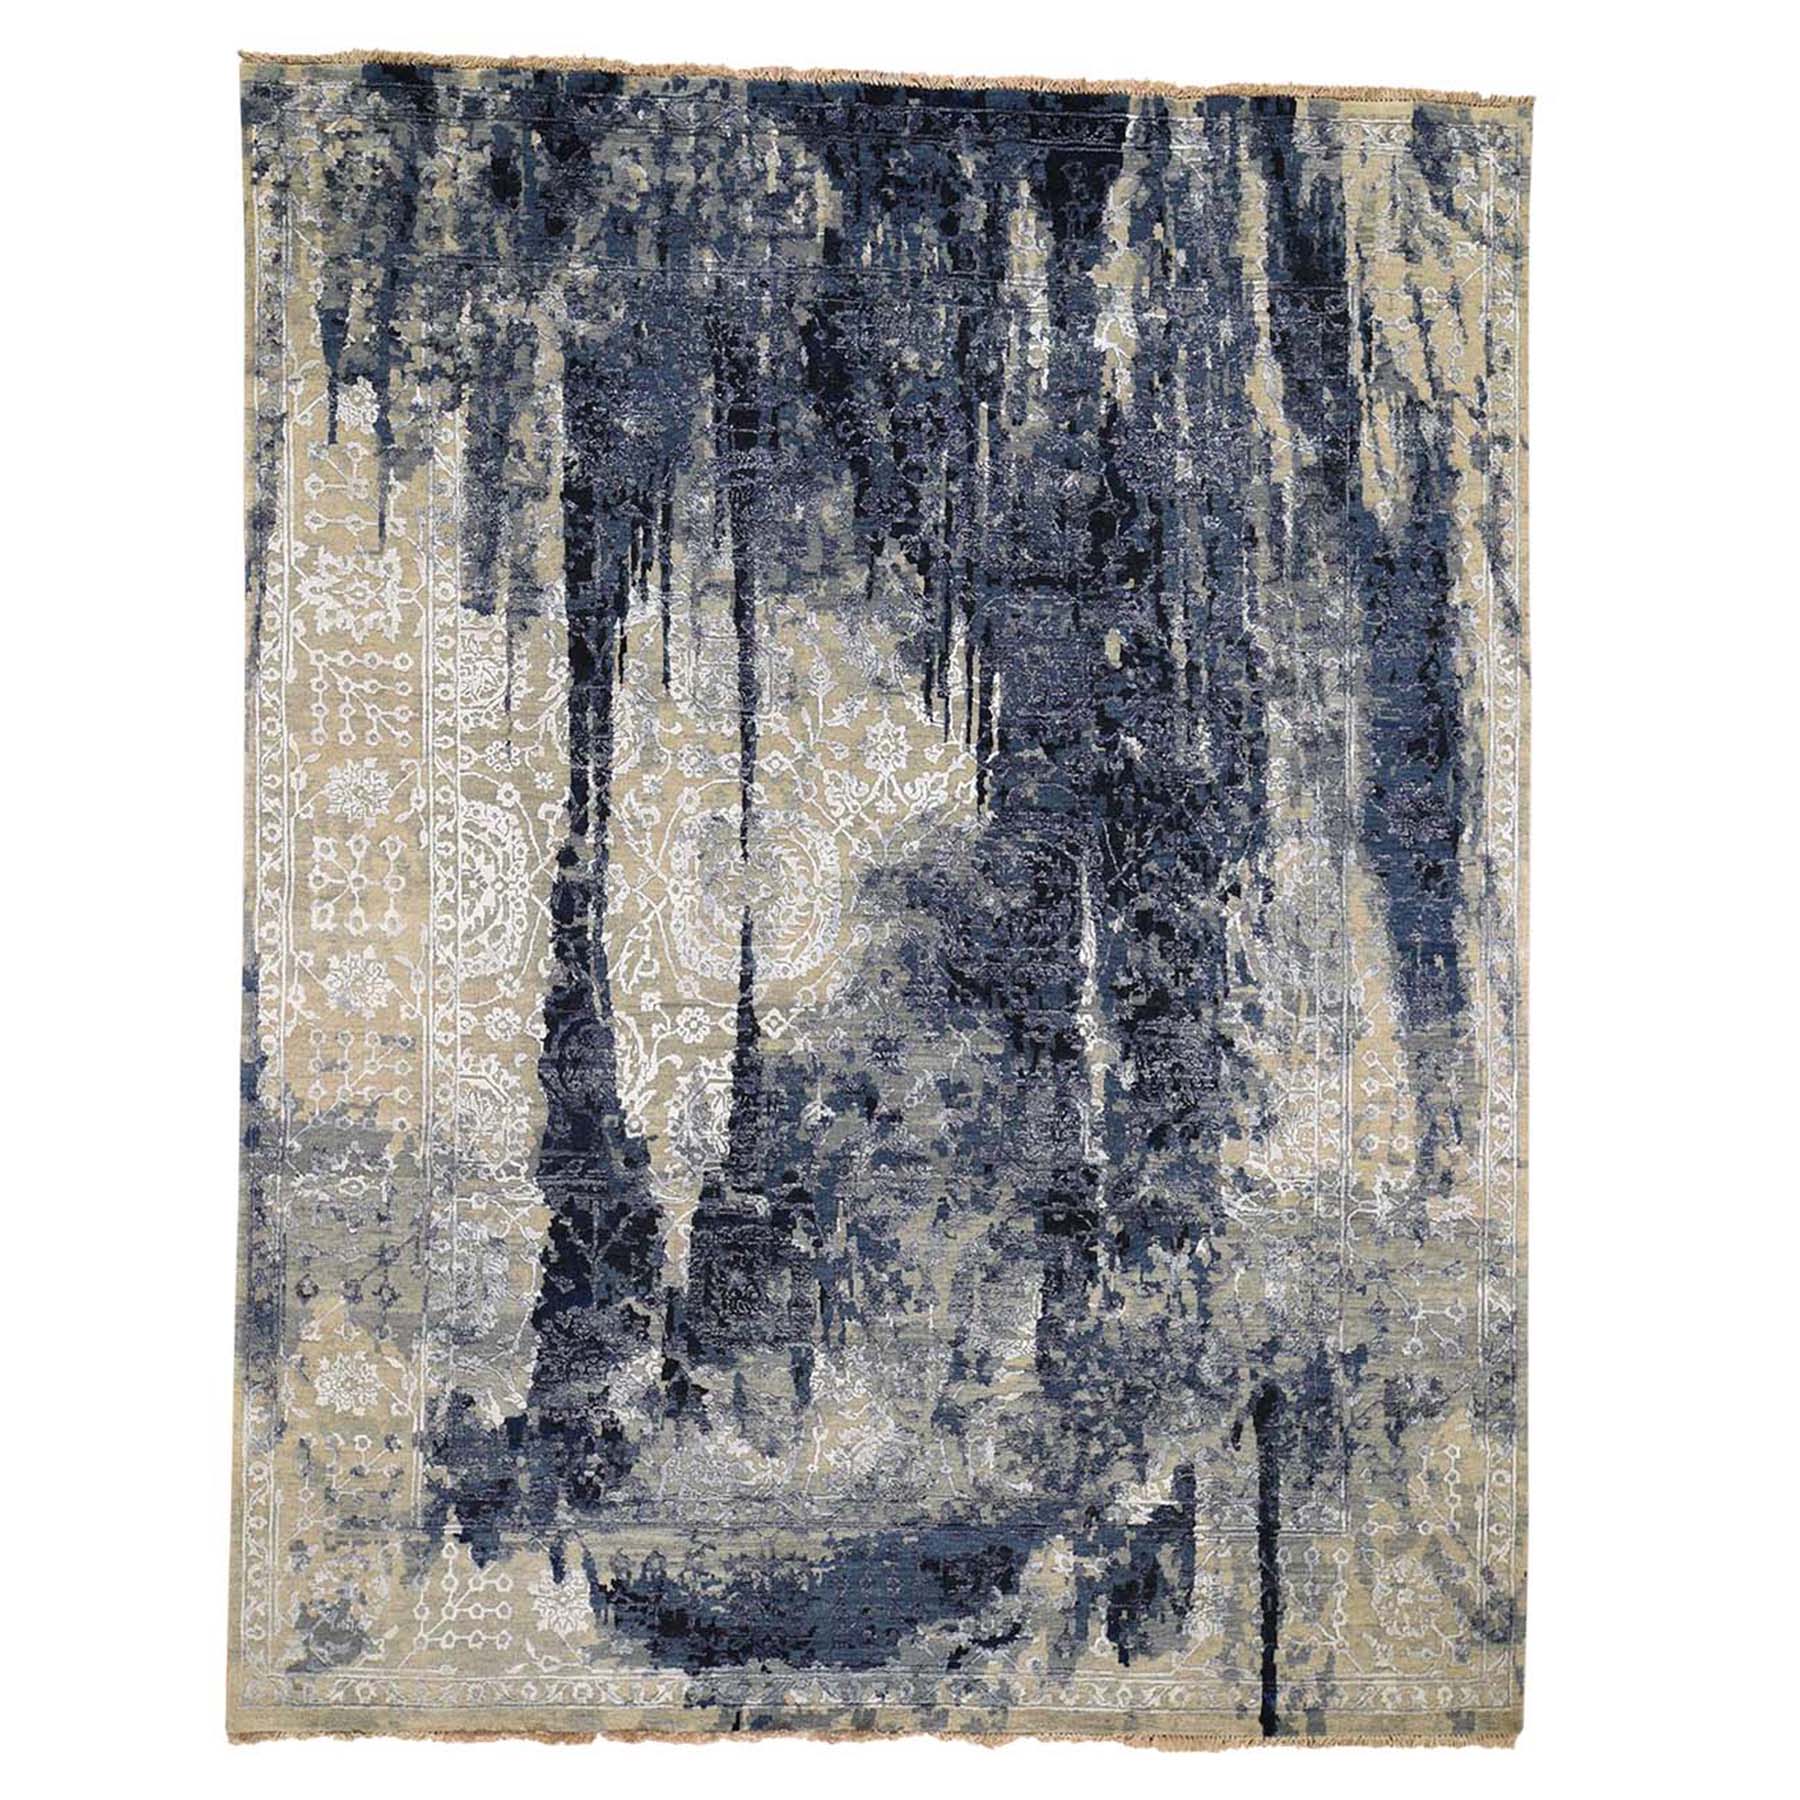 8'x9'9" Wool And Silk Shibori Design Tone On Tone Hand Woven Oriental Rug 